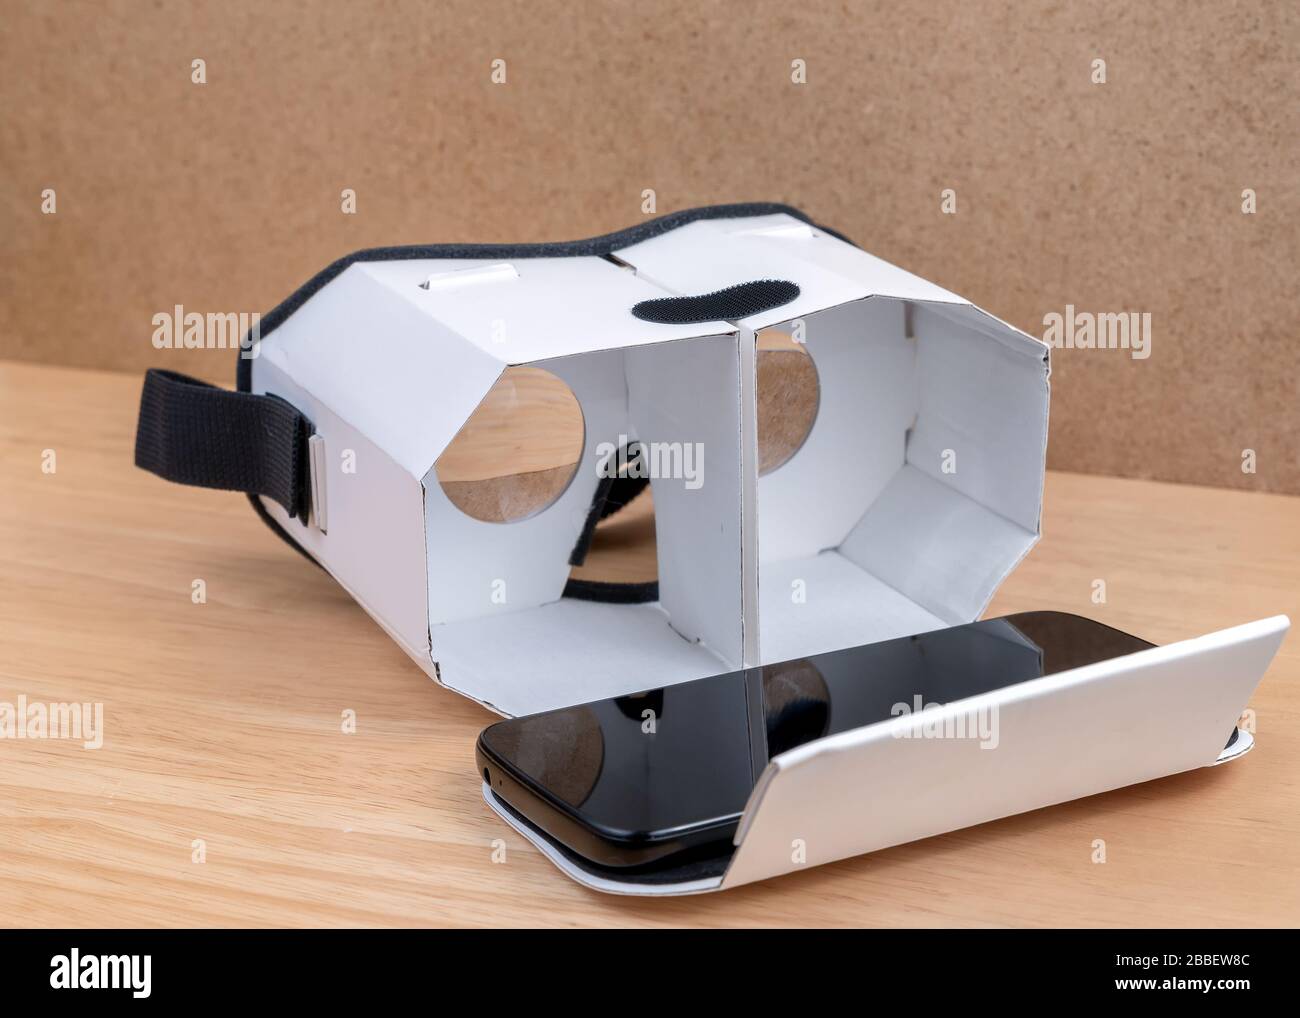 Un casque en carton pour la réalité virtuelle. Vue de face, il est ouvert un téléphone mobile sur lui. Lentilles visibles à l'intérieur. Il repose sur une table en bois à côté d'un cor Banque D'Images